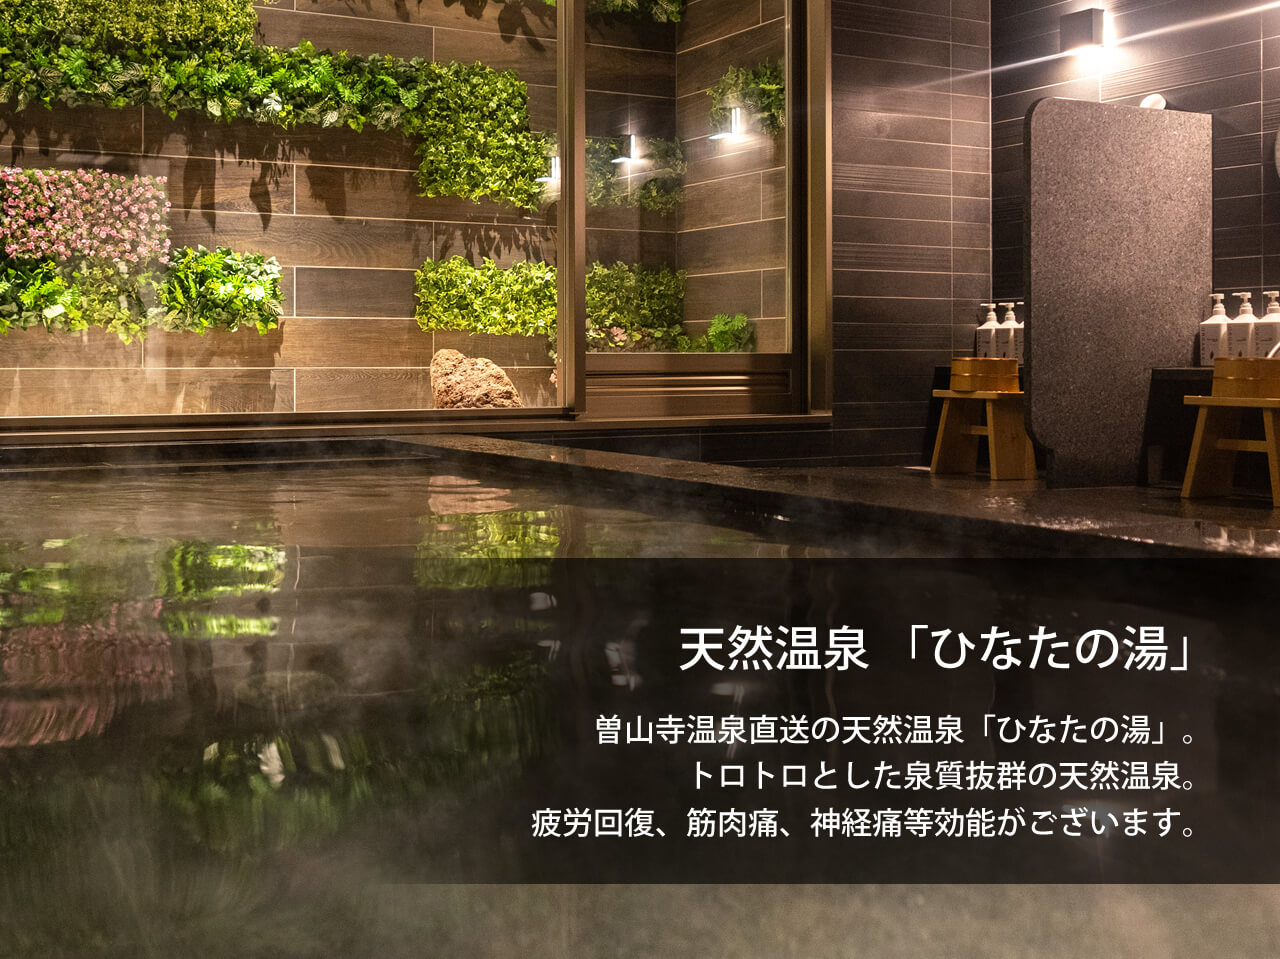 天然温泉 ひなたの湯 スーパーホテルPremier宮崎一番街